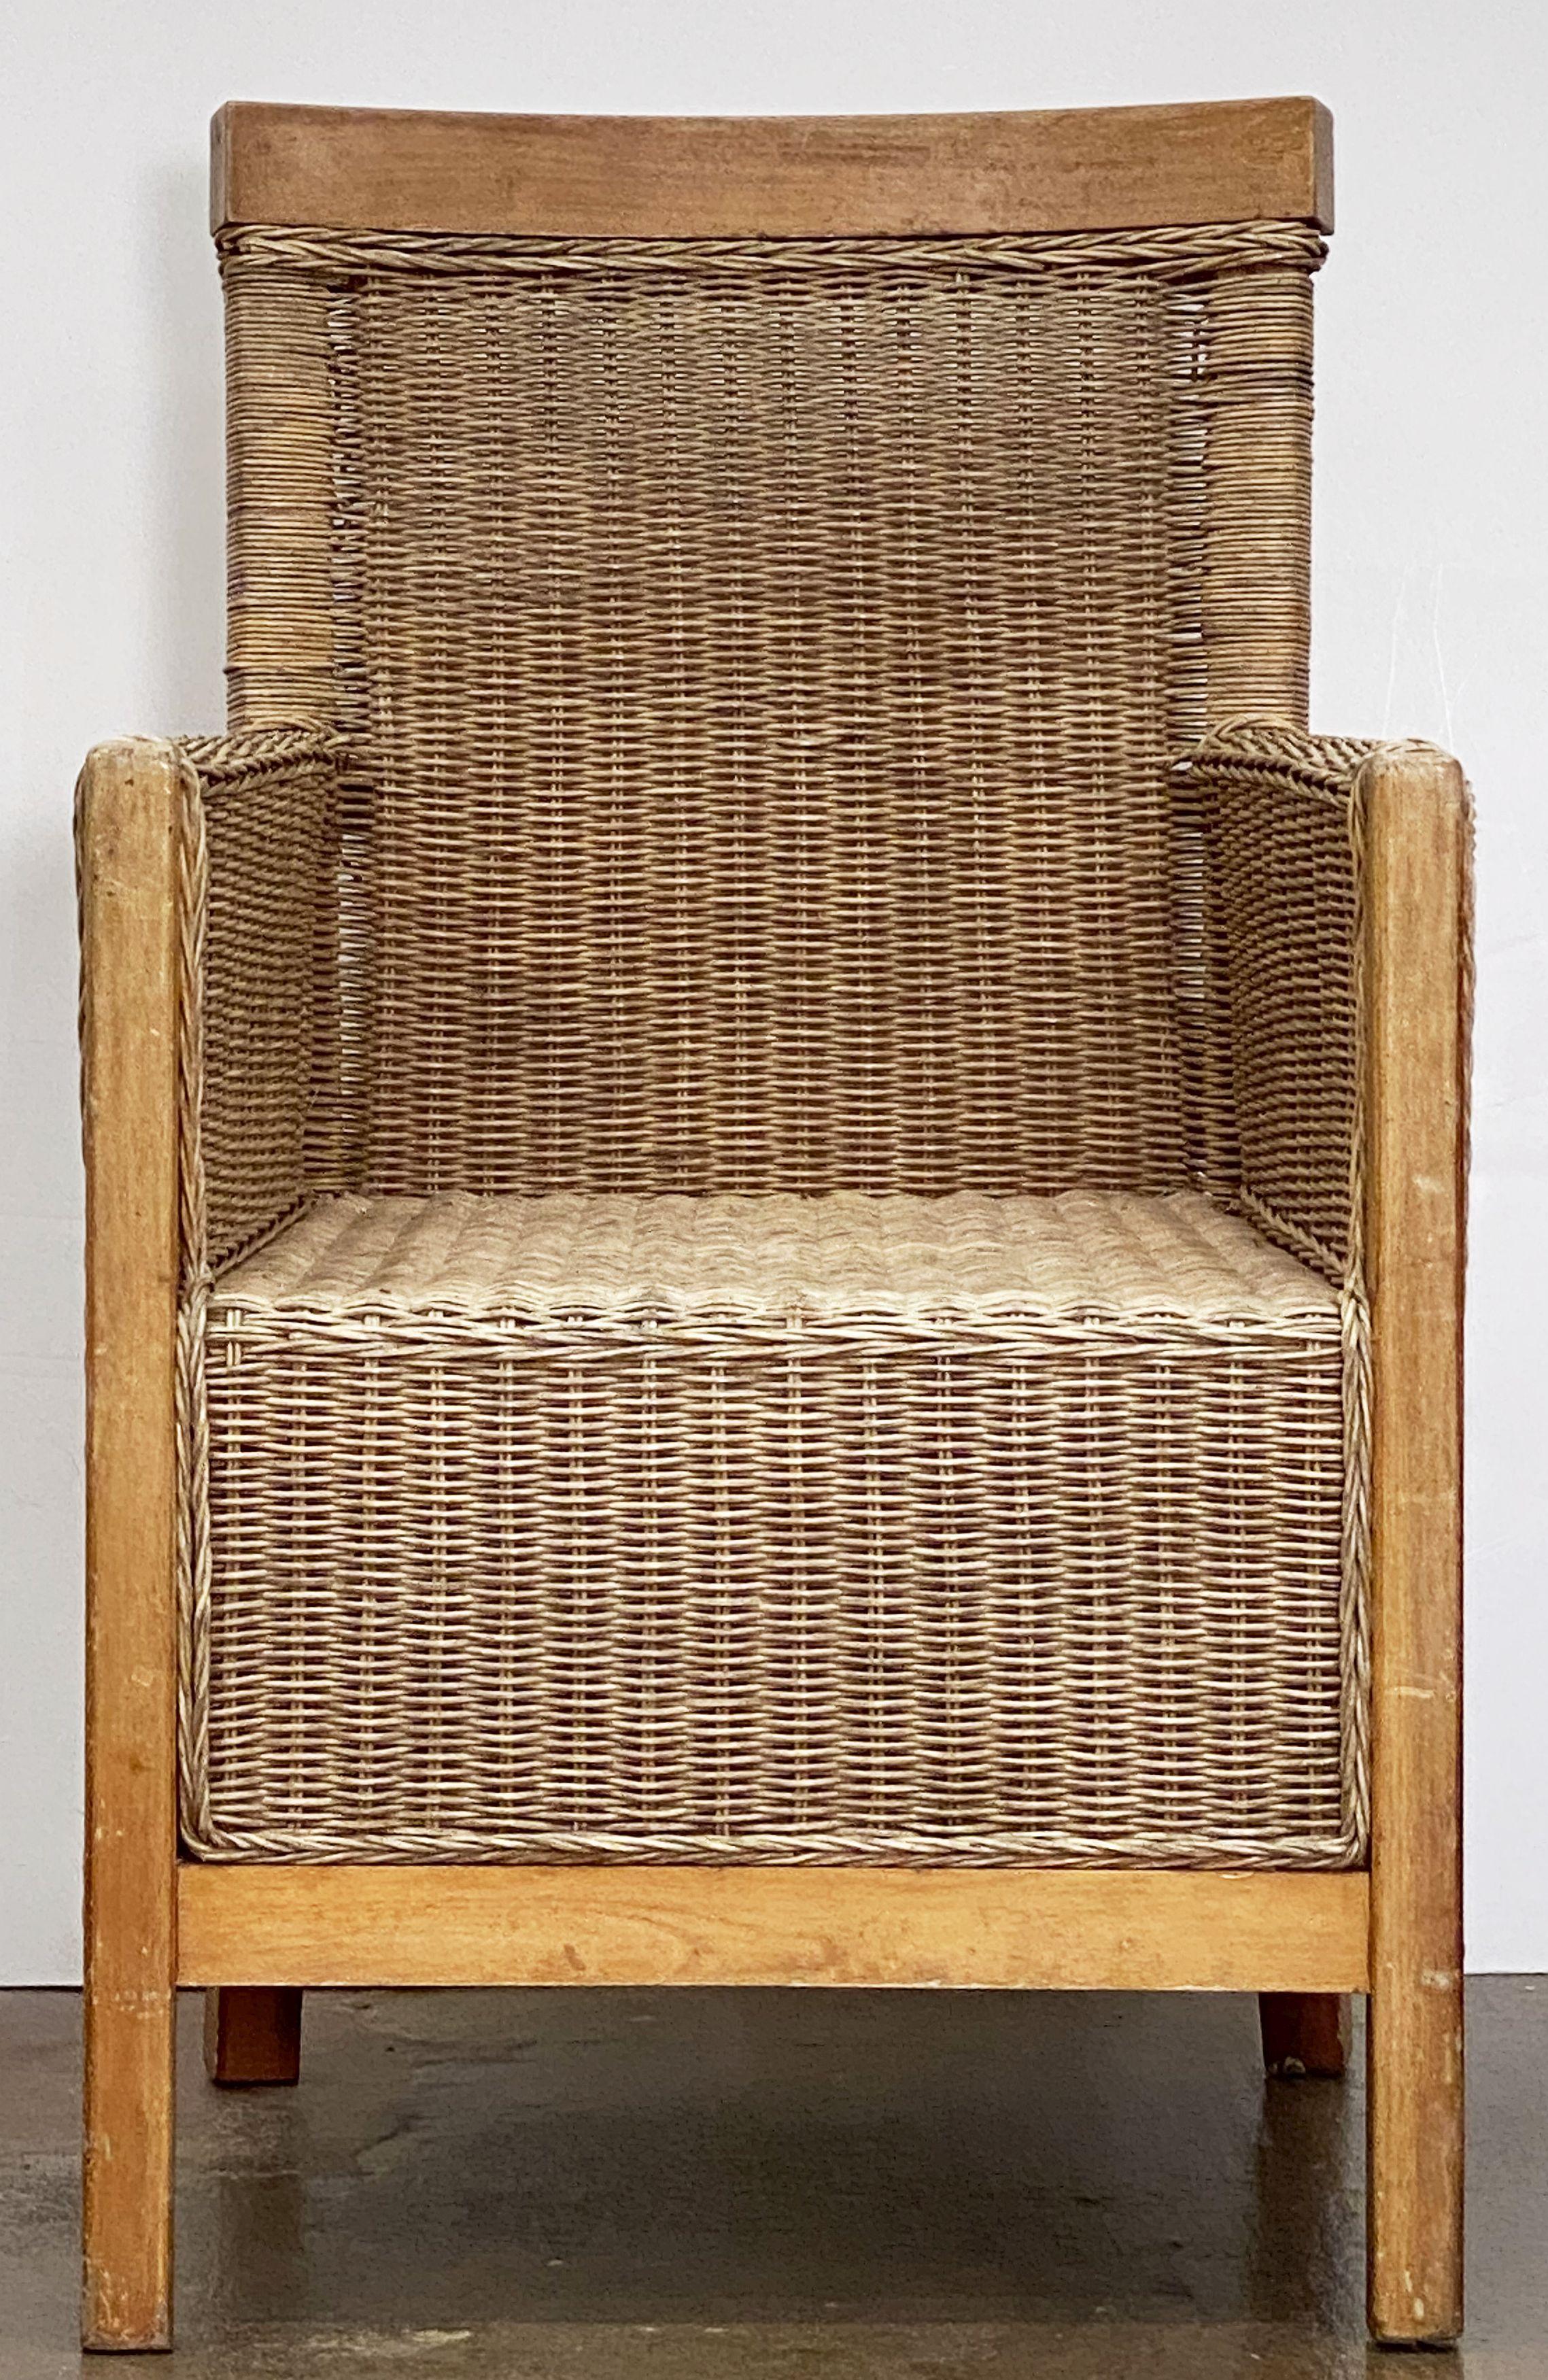 Un grand fauteuil ou chaise longue français en rotin tressé et en bois de hêtre avec un dossier et une assise confortables et un design moderne et robuste.

Deux disponibles.